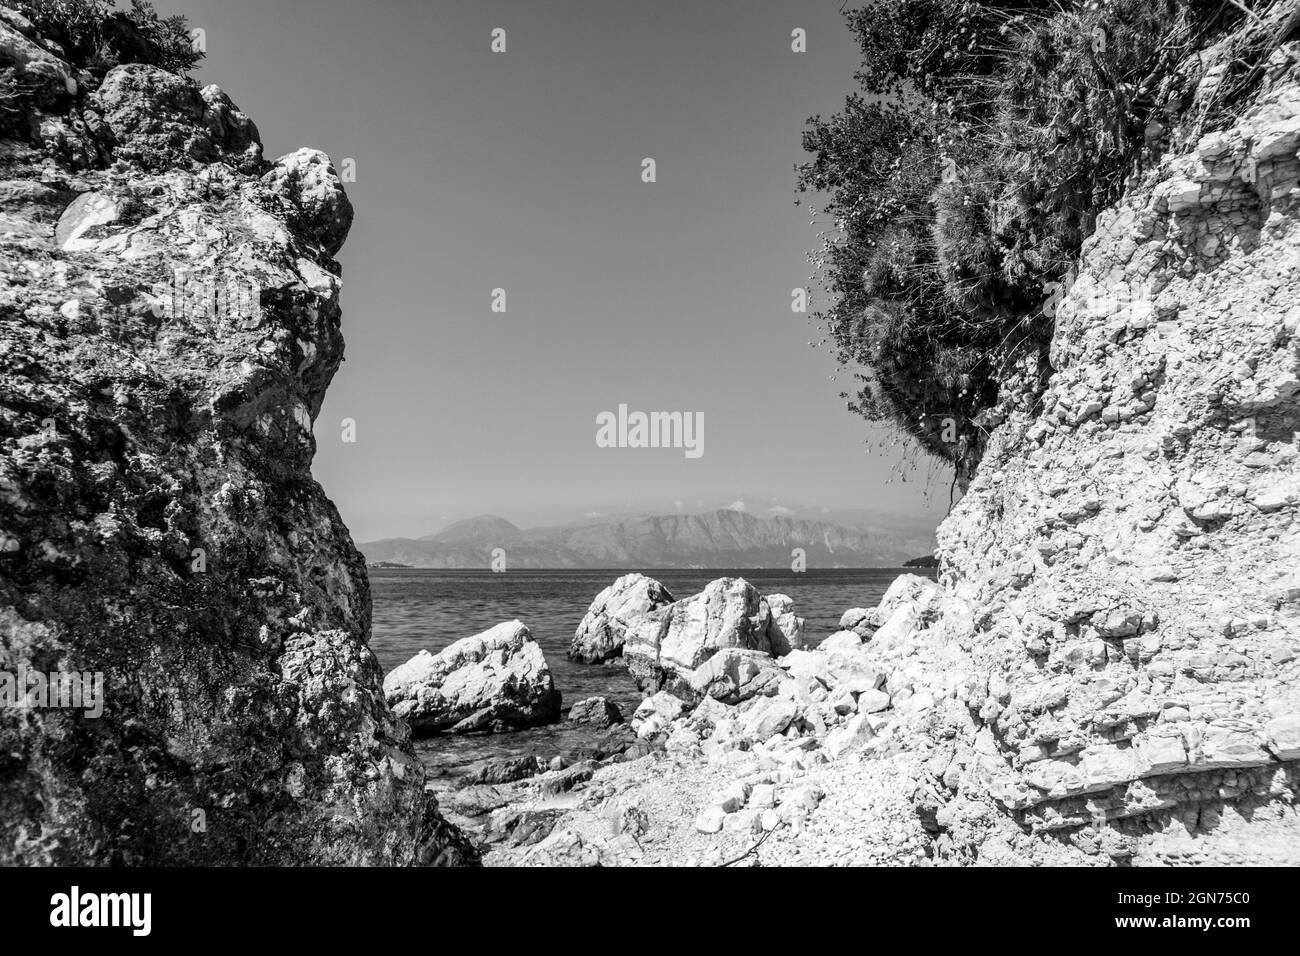 Rochers blancs sur la plage de galets sur la côte de l'île en Grèce. Été nature sauvage voyage à la mer Ionienne. Noir et blanc Banque D'Images